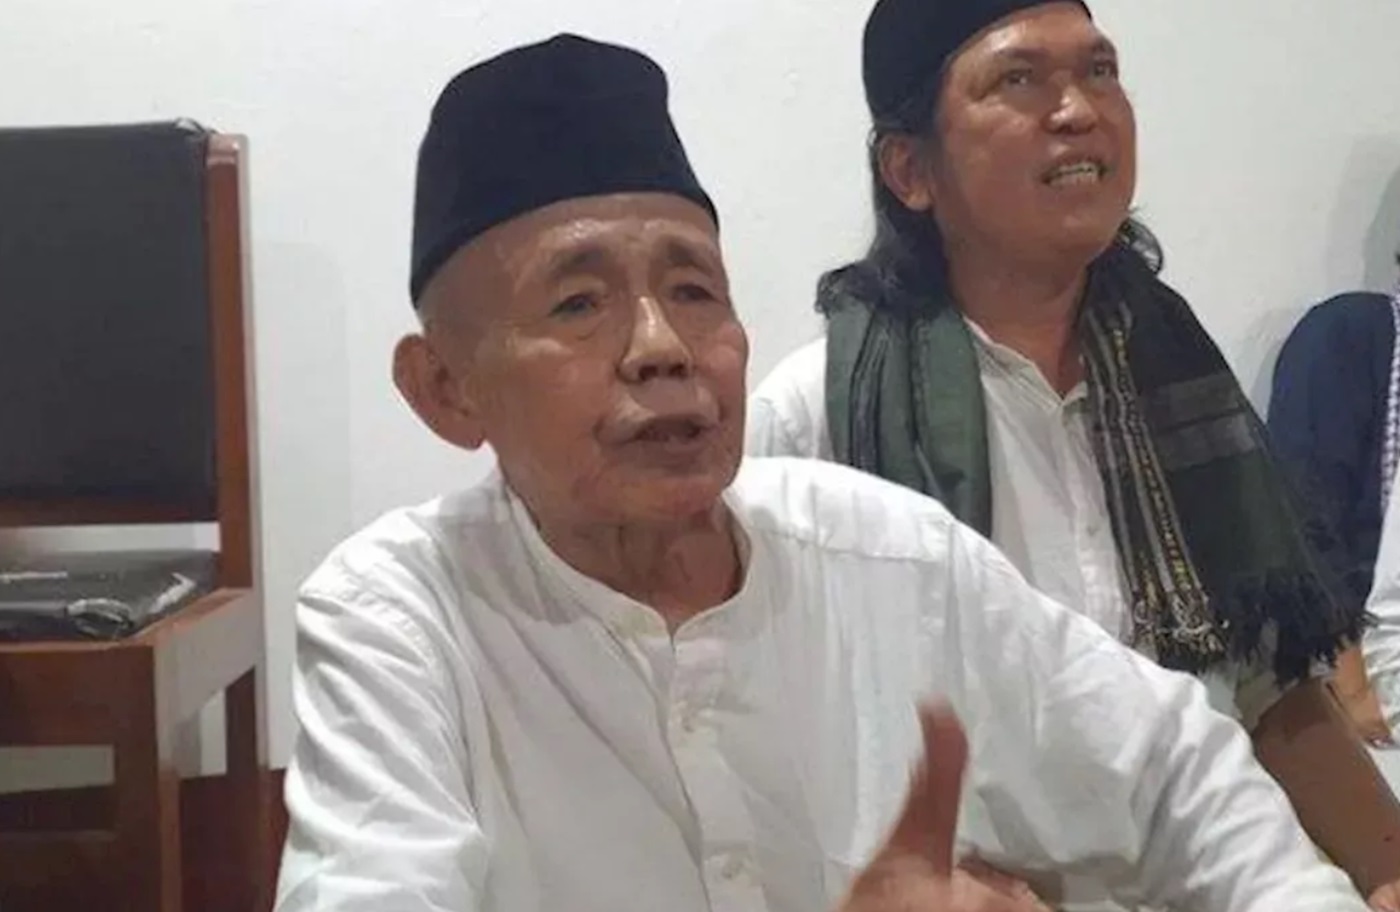 Mbah Benu Imam Jamaah Aolia Gunung Kidul, Keturunan Gagak Pranolo I, Punya Ilmu Laduni & Pernah Kuliah di UGM, Siapa Dia?